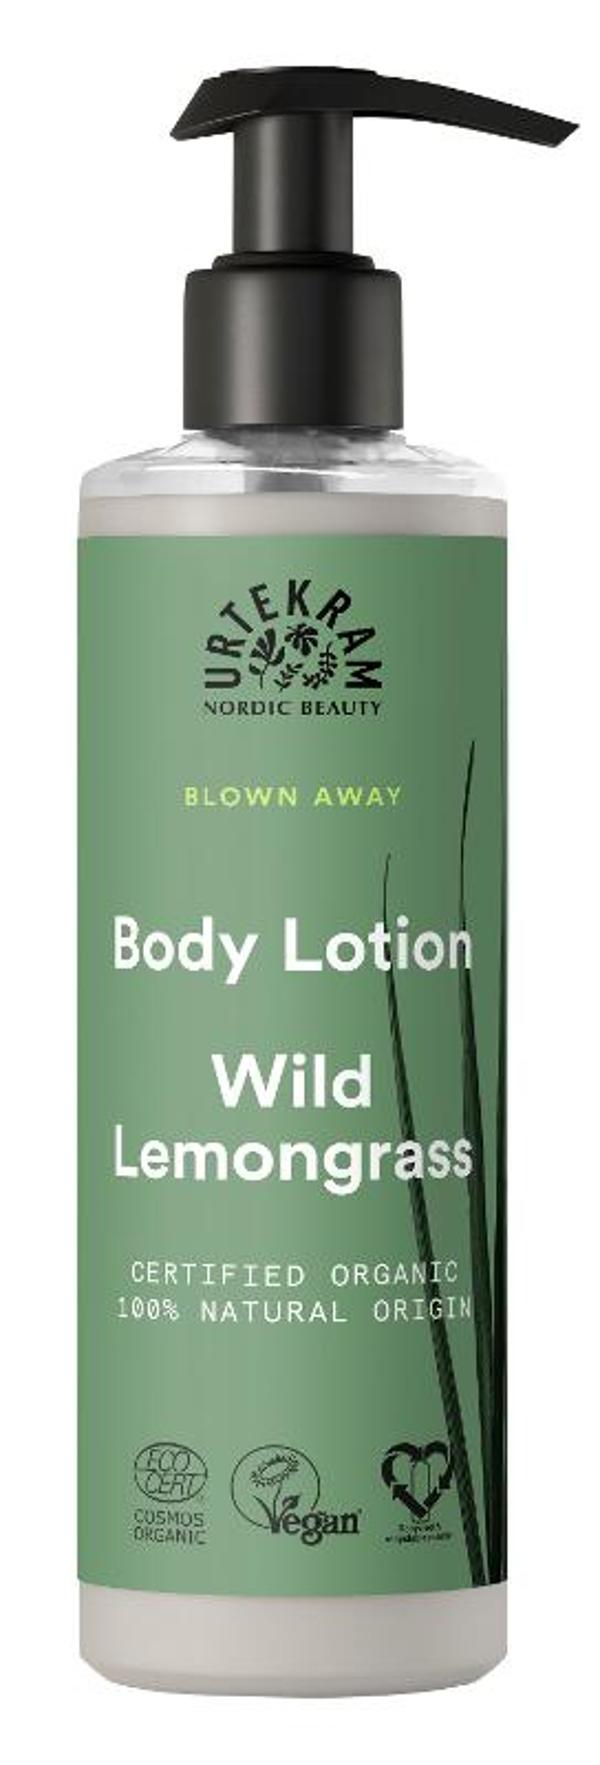 Produktfoto zu Body Lotion Wild Lemongrass